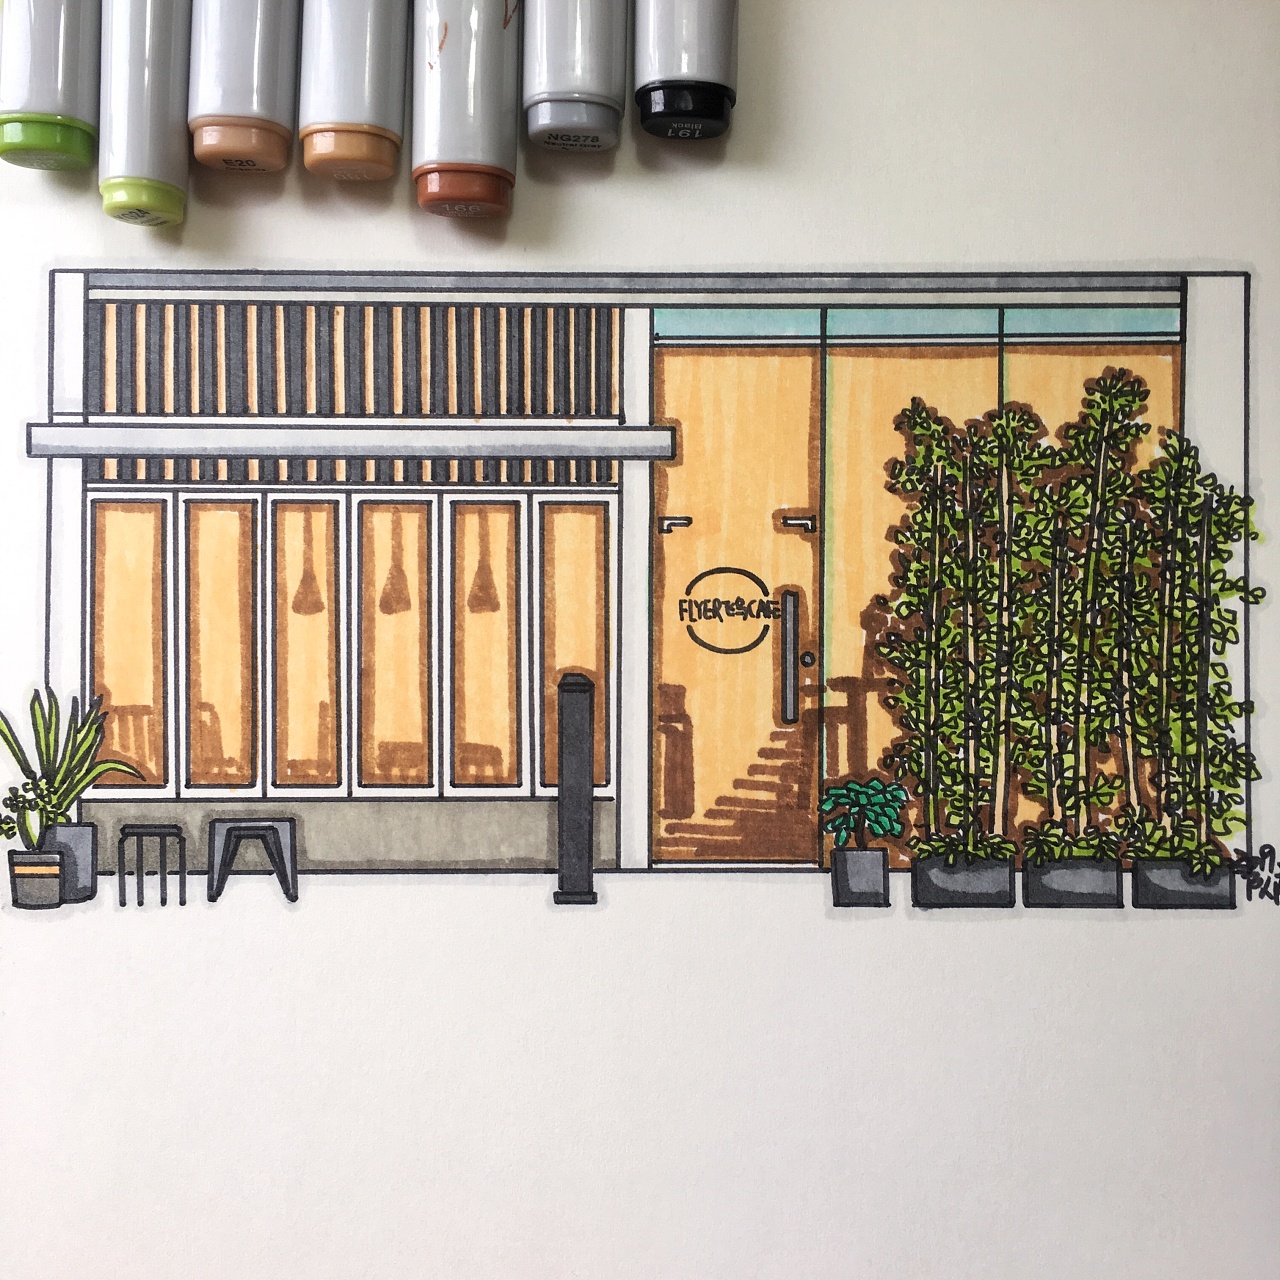 【杭州手绘】咖啡厅设计手绘表现 - 环艺室内手绘表现